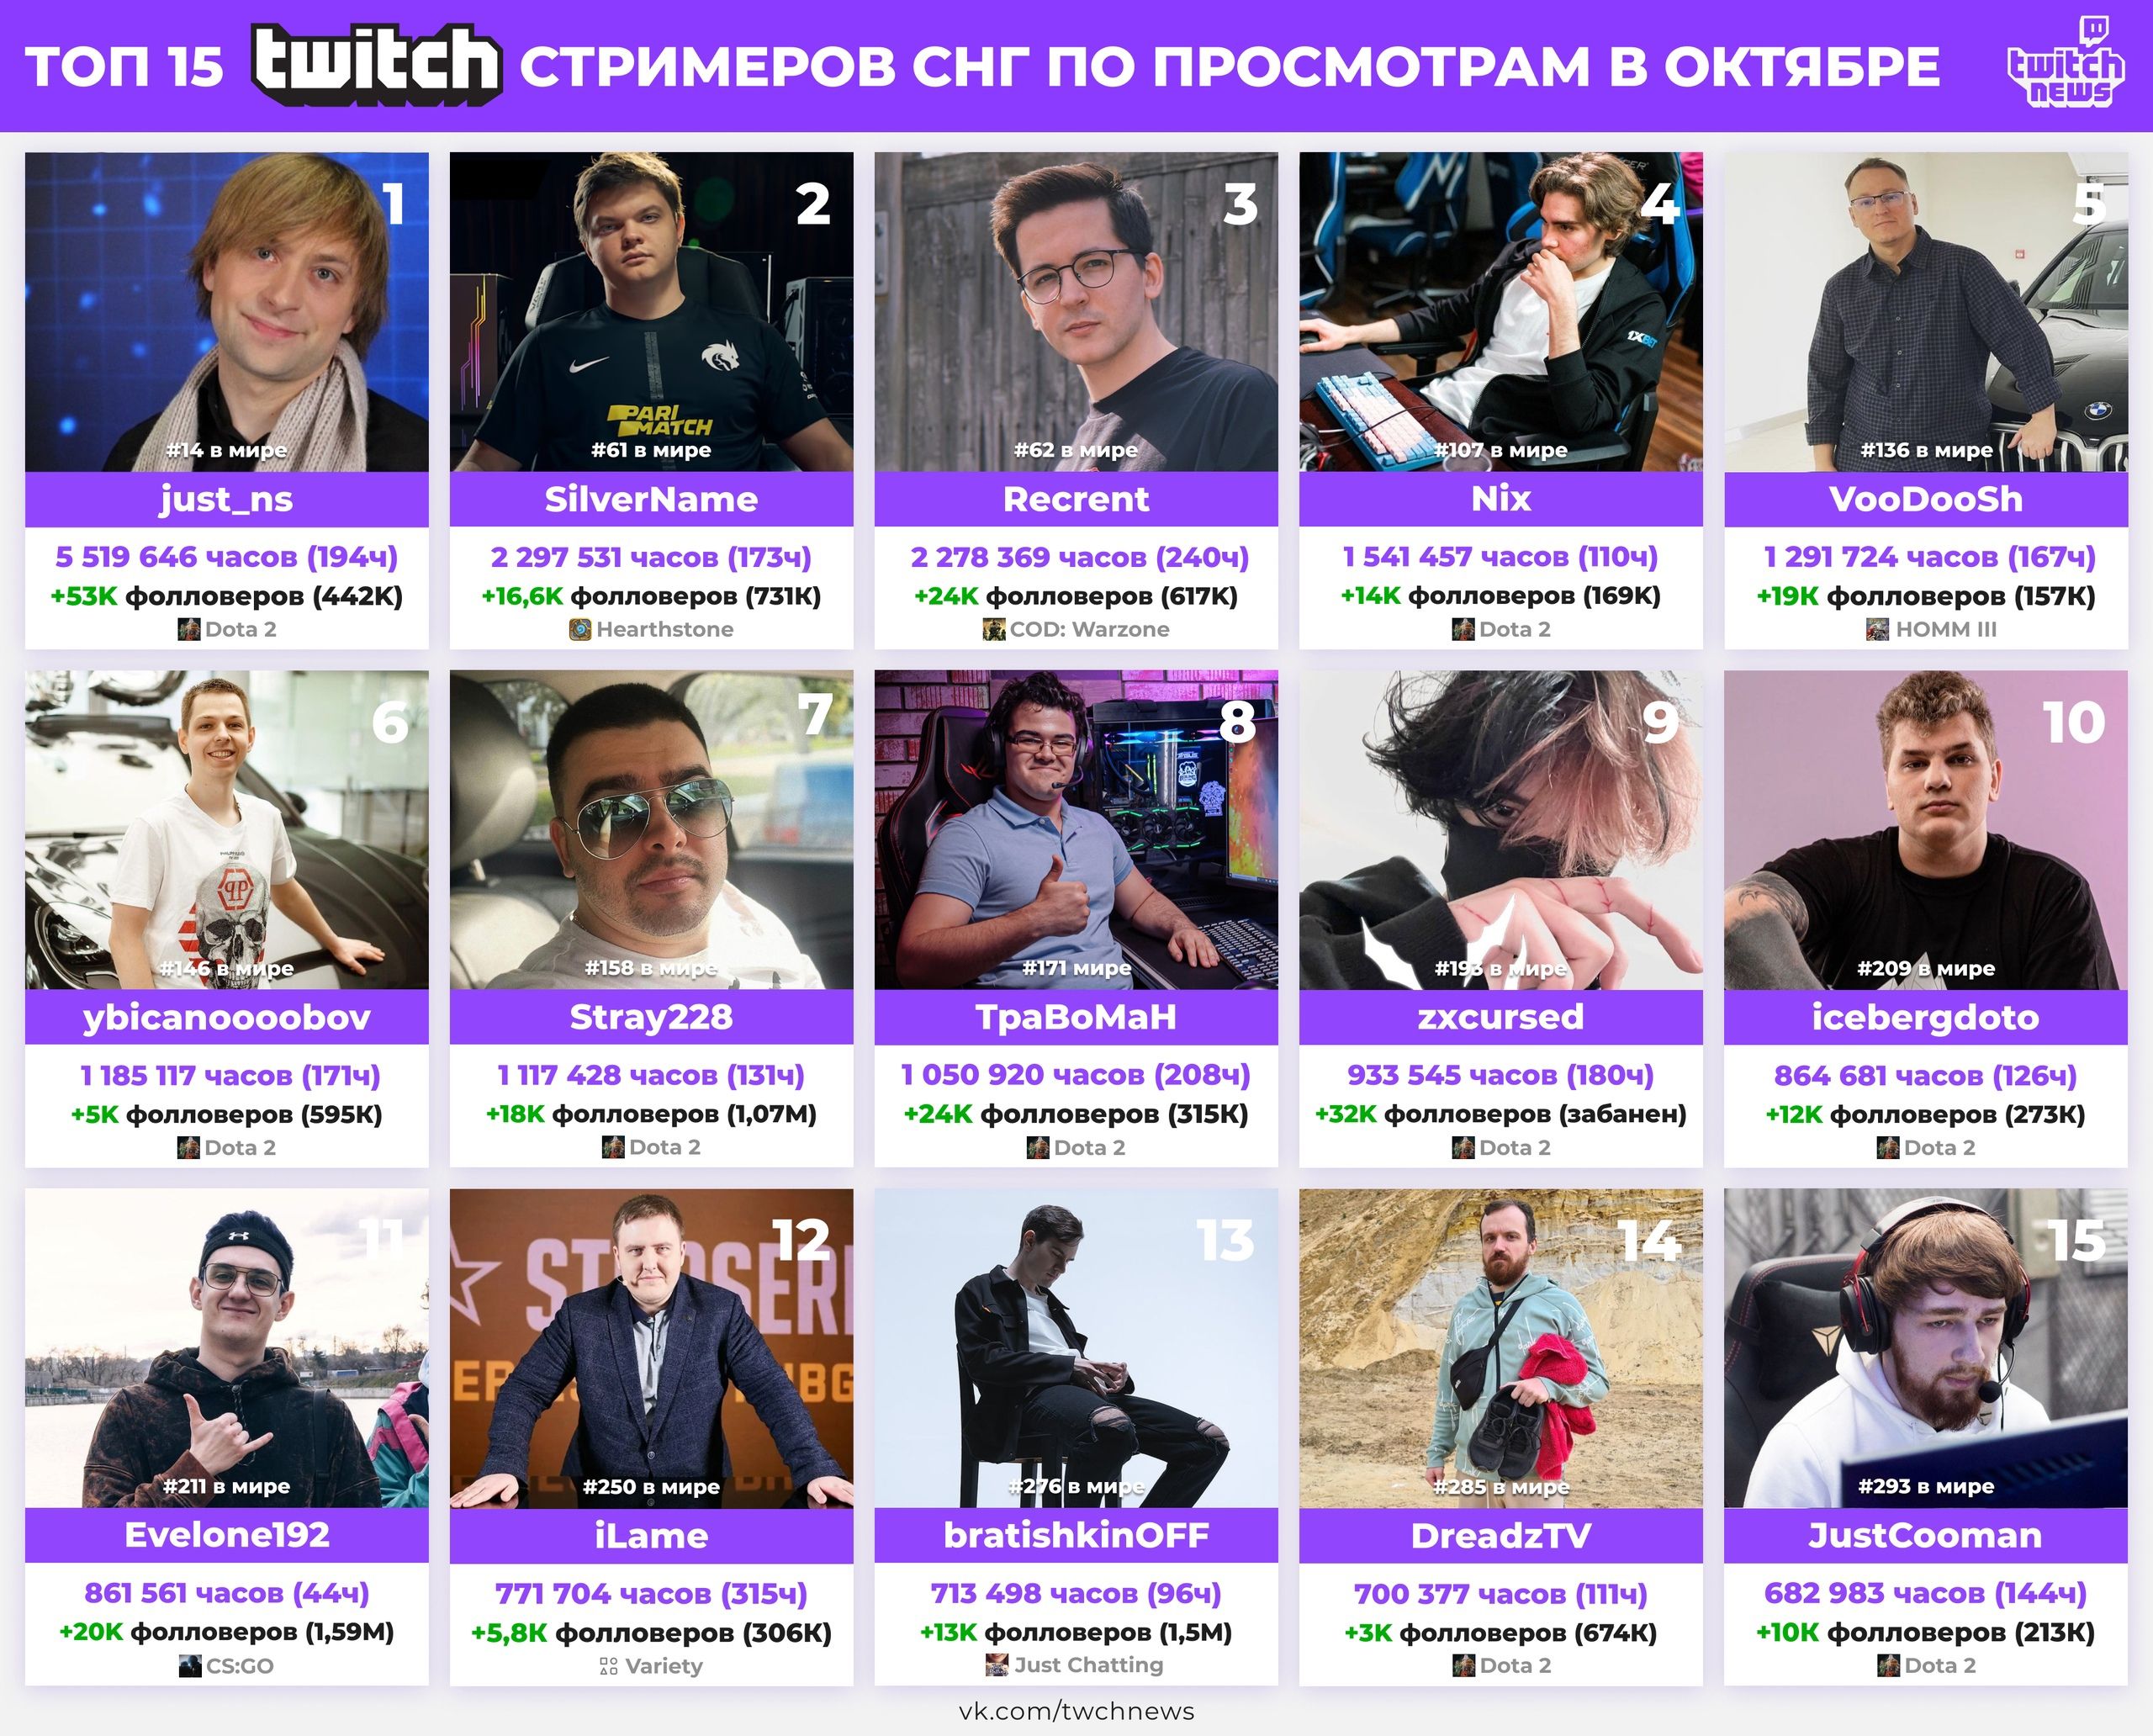 Популярные стримеры в русскоязычном сегменте Twitch за октябрь 2021 года. Источник: Twitch News